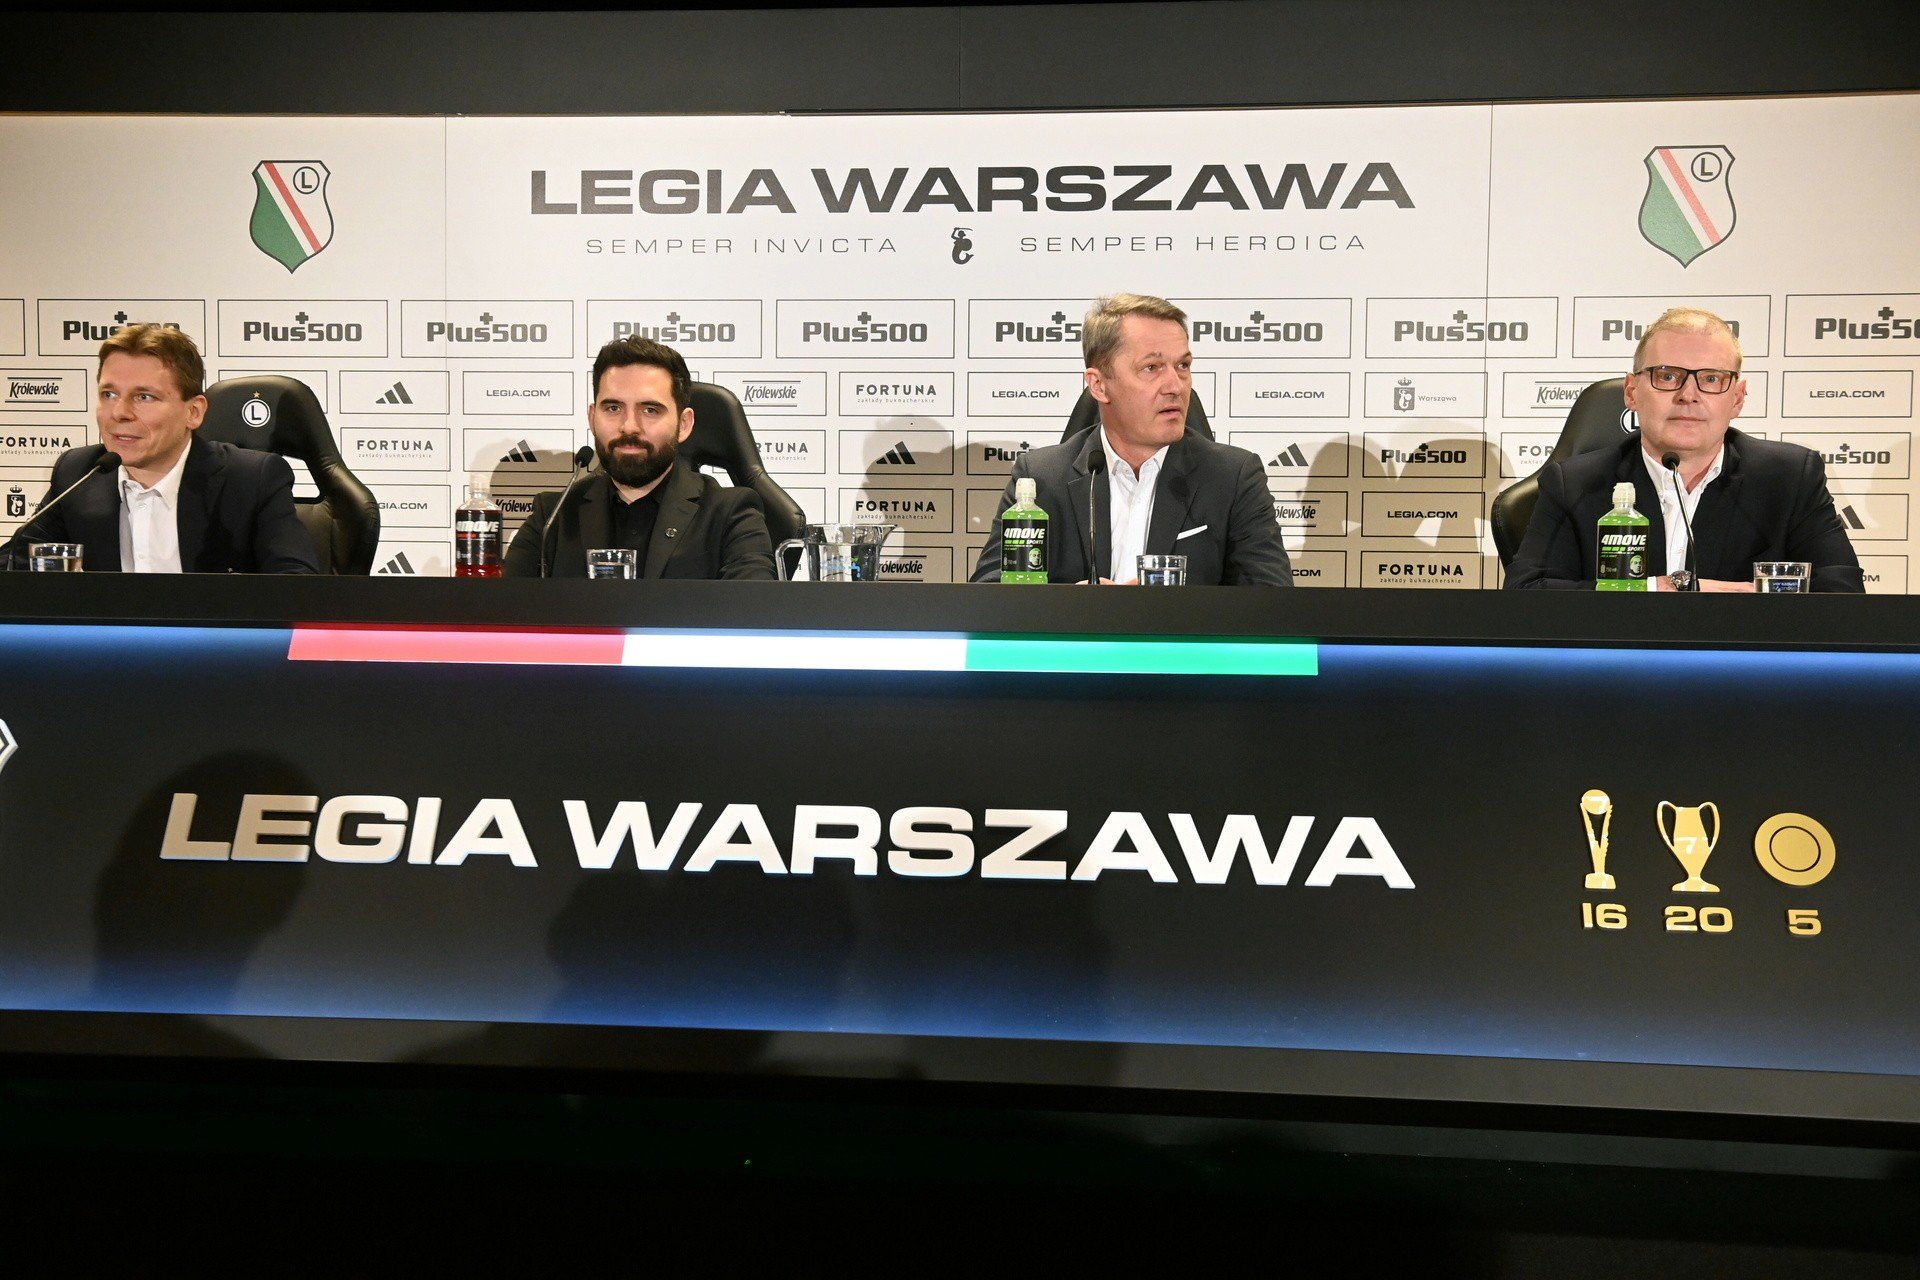 Wiceprezes Legii Warszawa: Przed nami wielkie wyzwania!